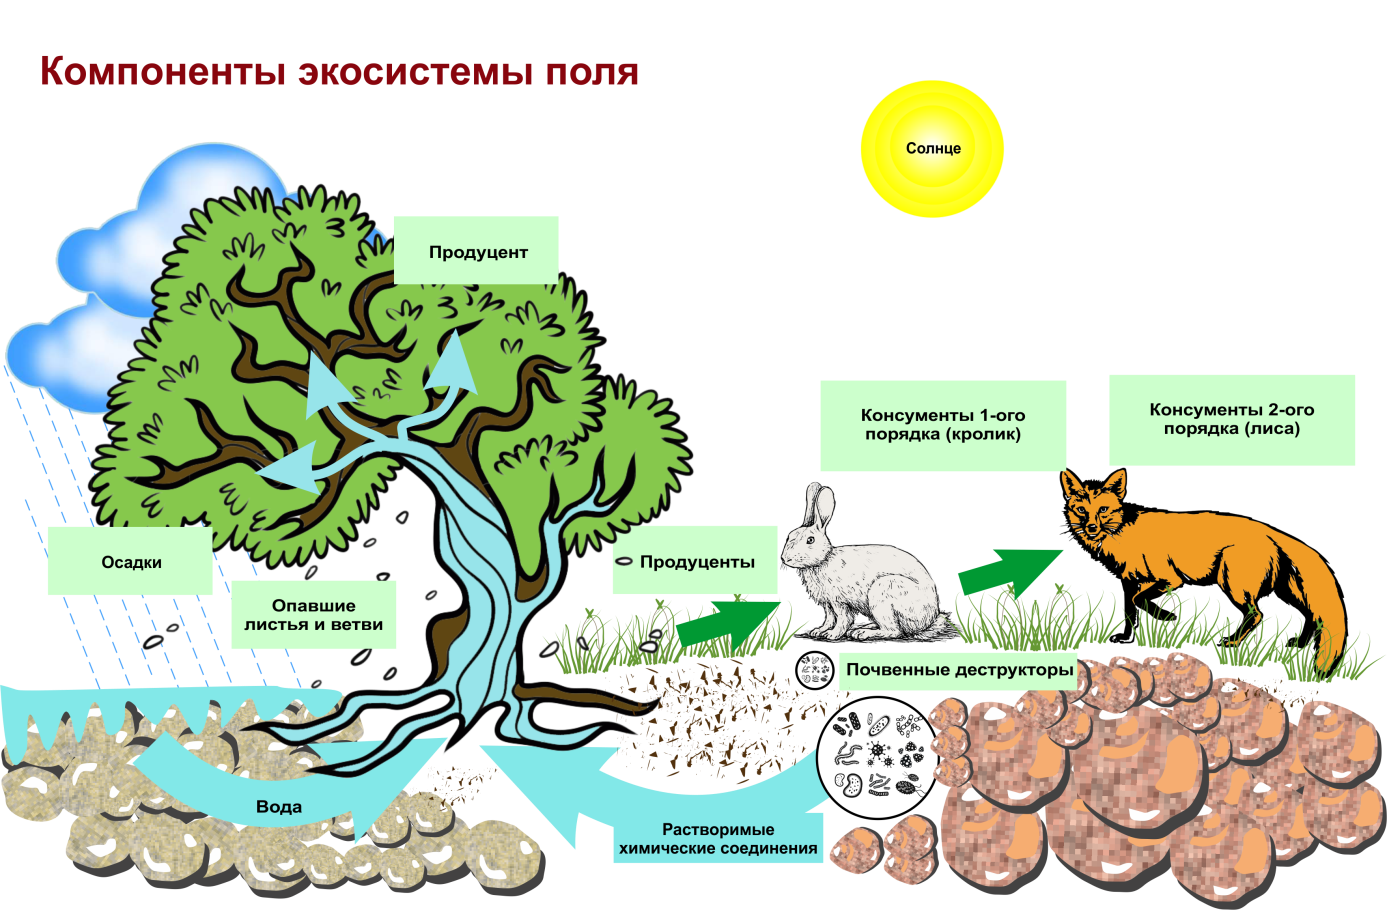 Дополни цепочку биологического круговорота недостающим звеном. Структура биогеоценоза и экосистемы. Схема трофической структуры биоценоза широколиственного леса. Строение биогеоценоза экосистемы. Схема состава компонентов экосистемы.